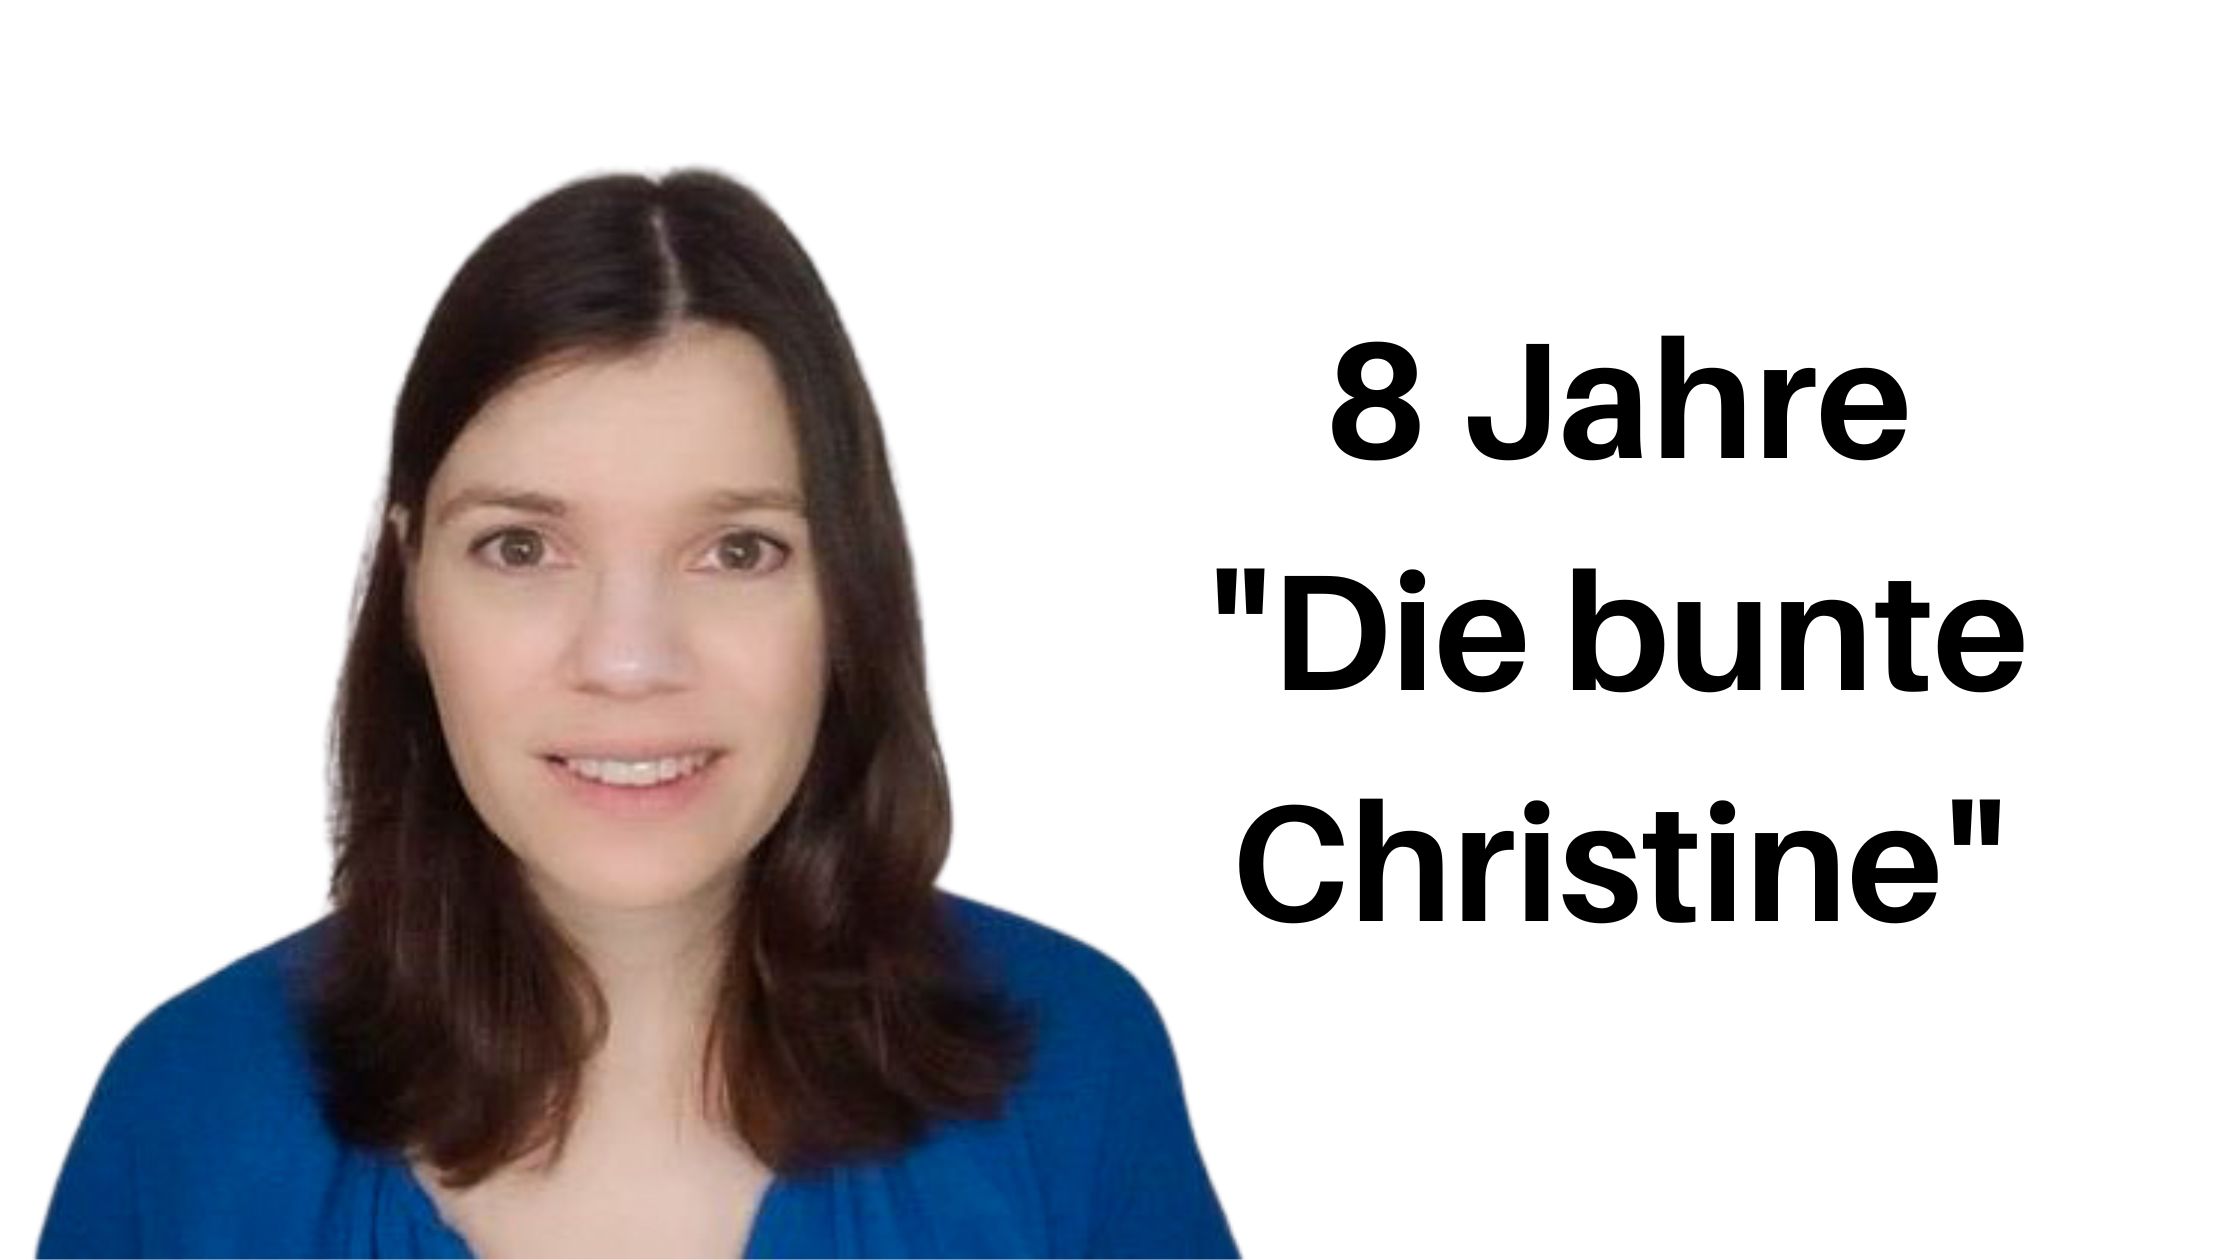 8 Jahre Die bunte Christine Aufmacher 1